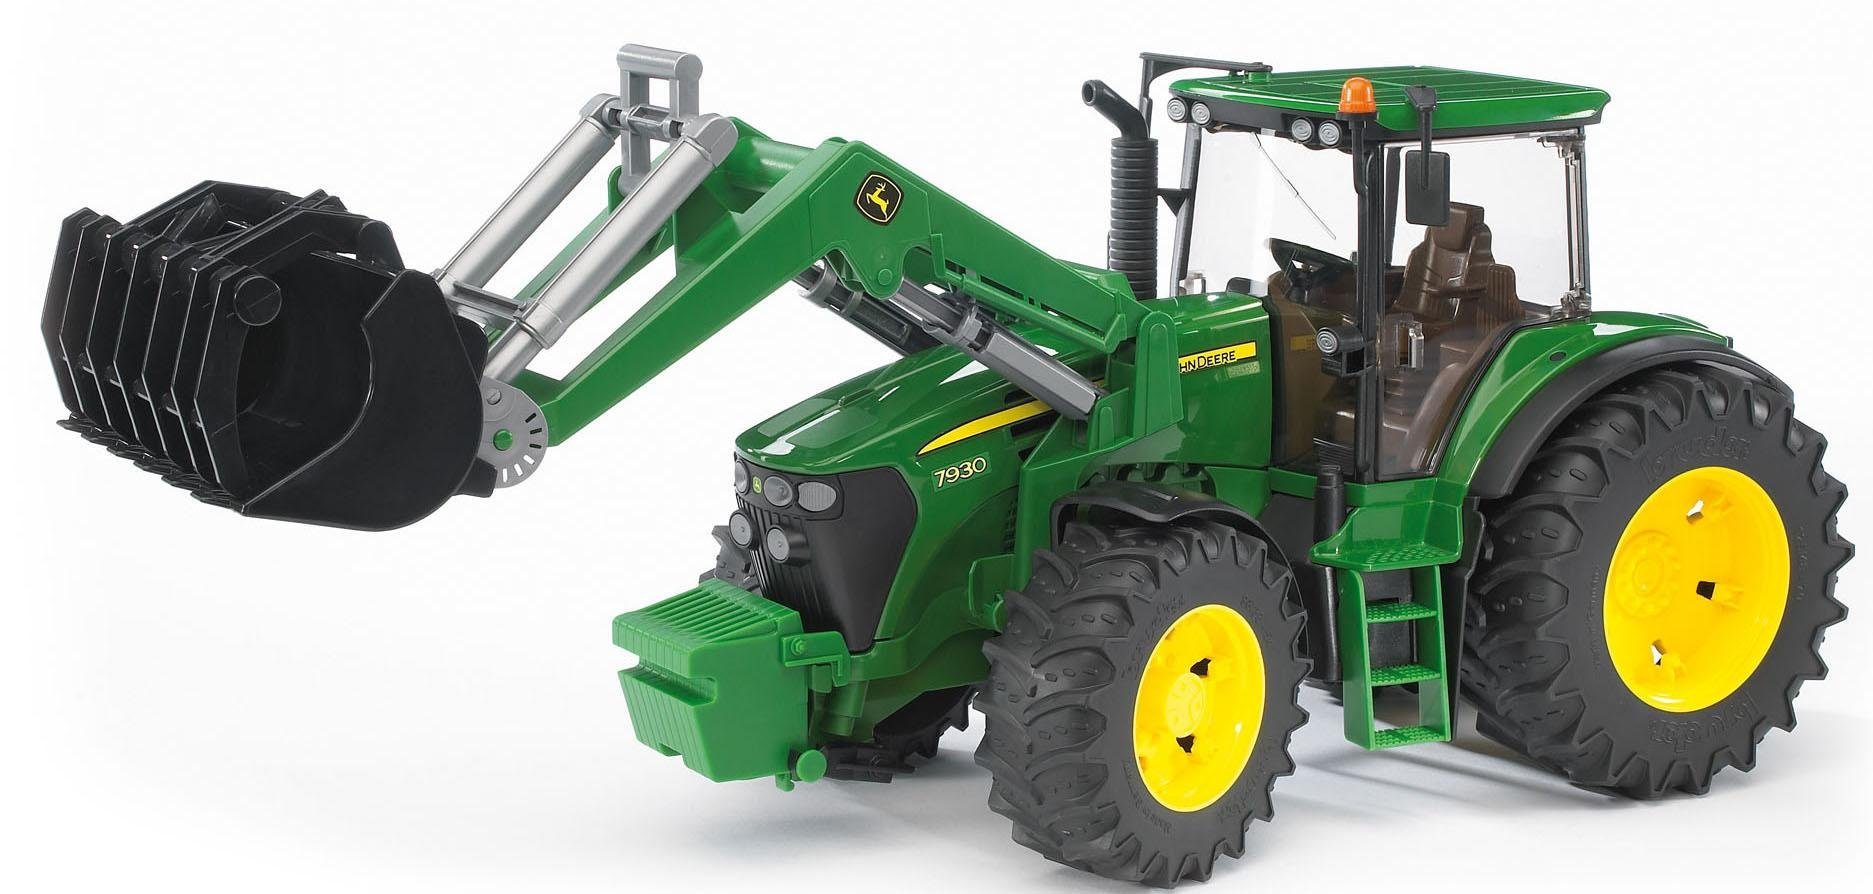 Bruder® Spielzeug-Traktor »John Deere 7930 mit Frontlader, 1:16, grün«,  Made in Europe online kaufen | OTTO